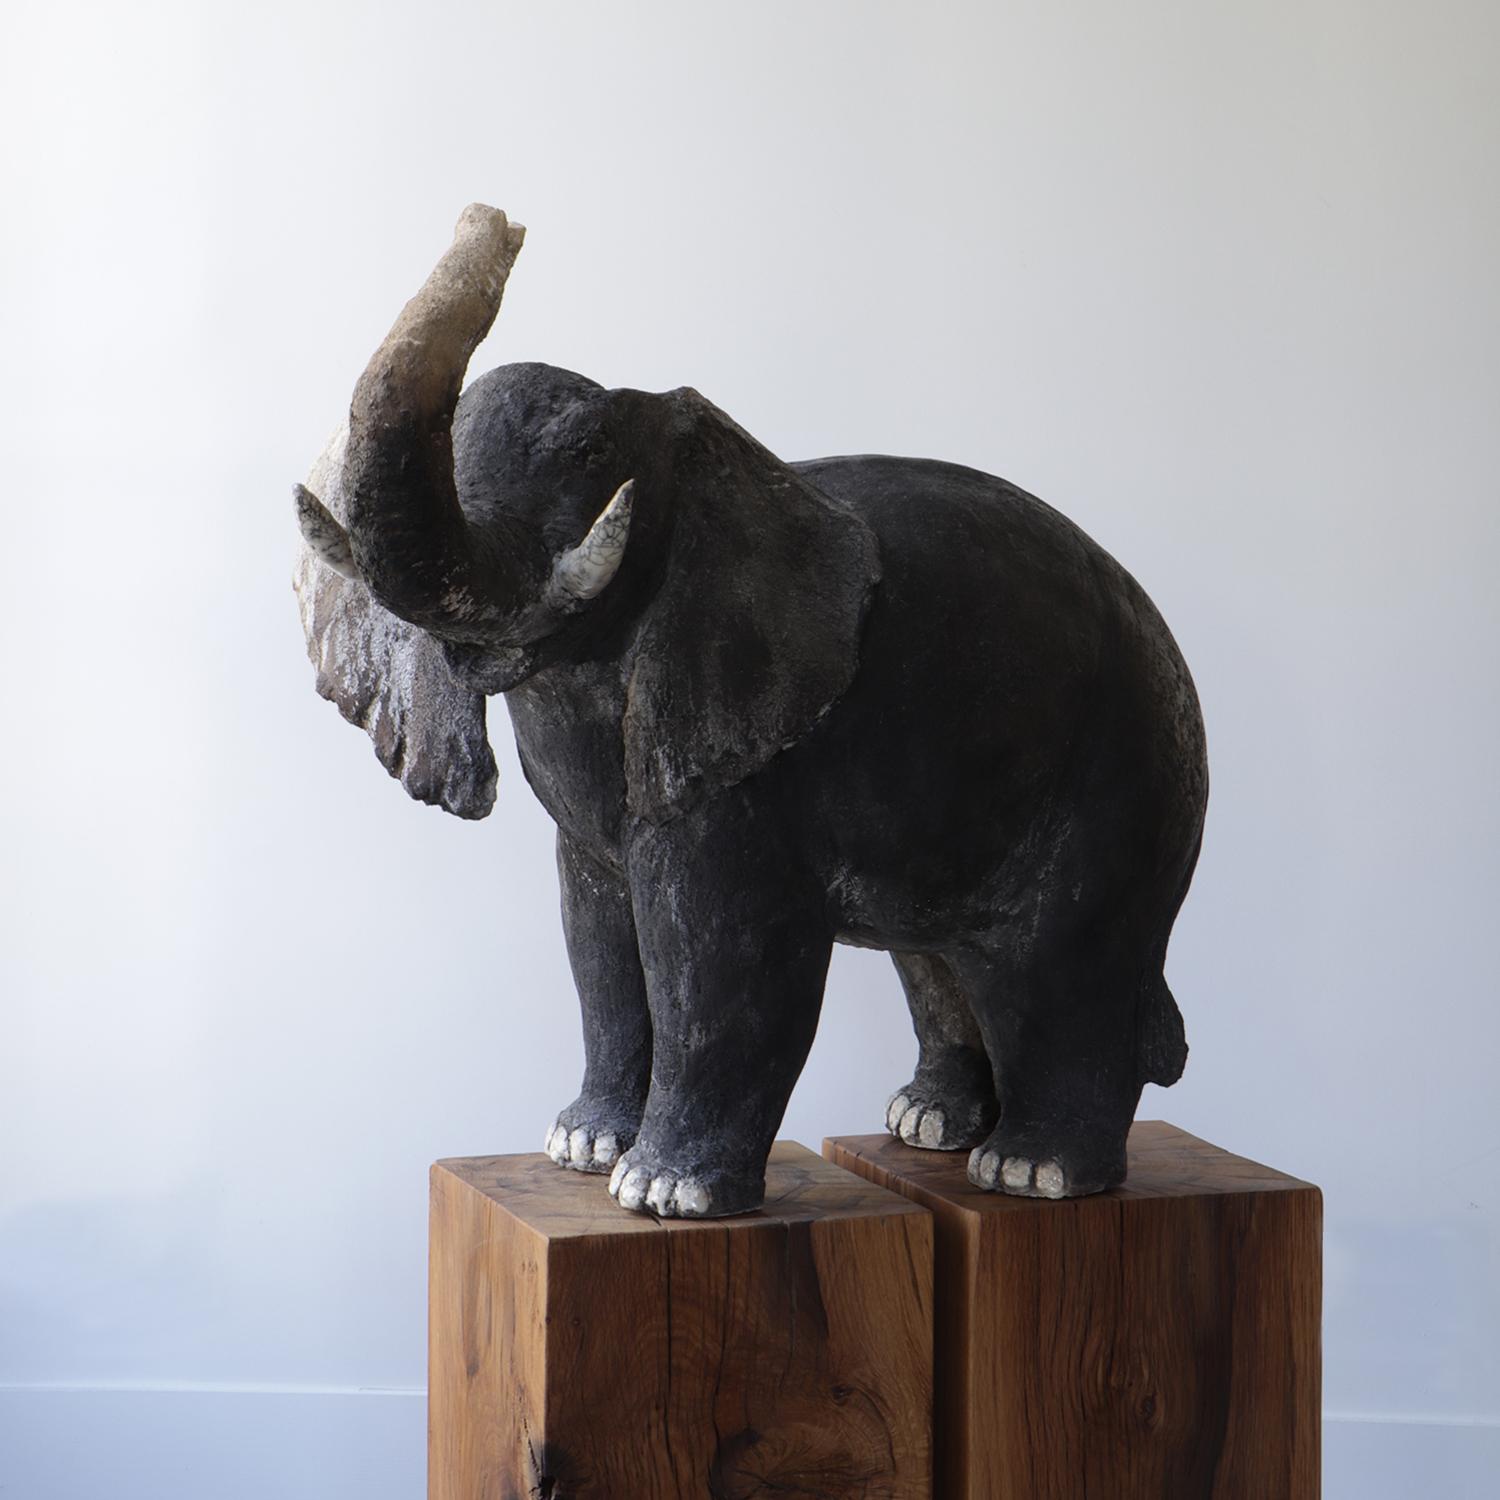 Dieser sehr bedeutende Elefant wurde von der Künstlerin und Bildhauerin Joanna Hair aus glasiertem Steinzeug hergestellt.